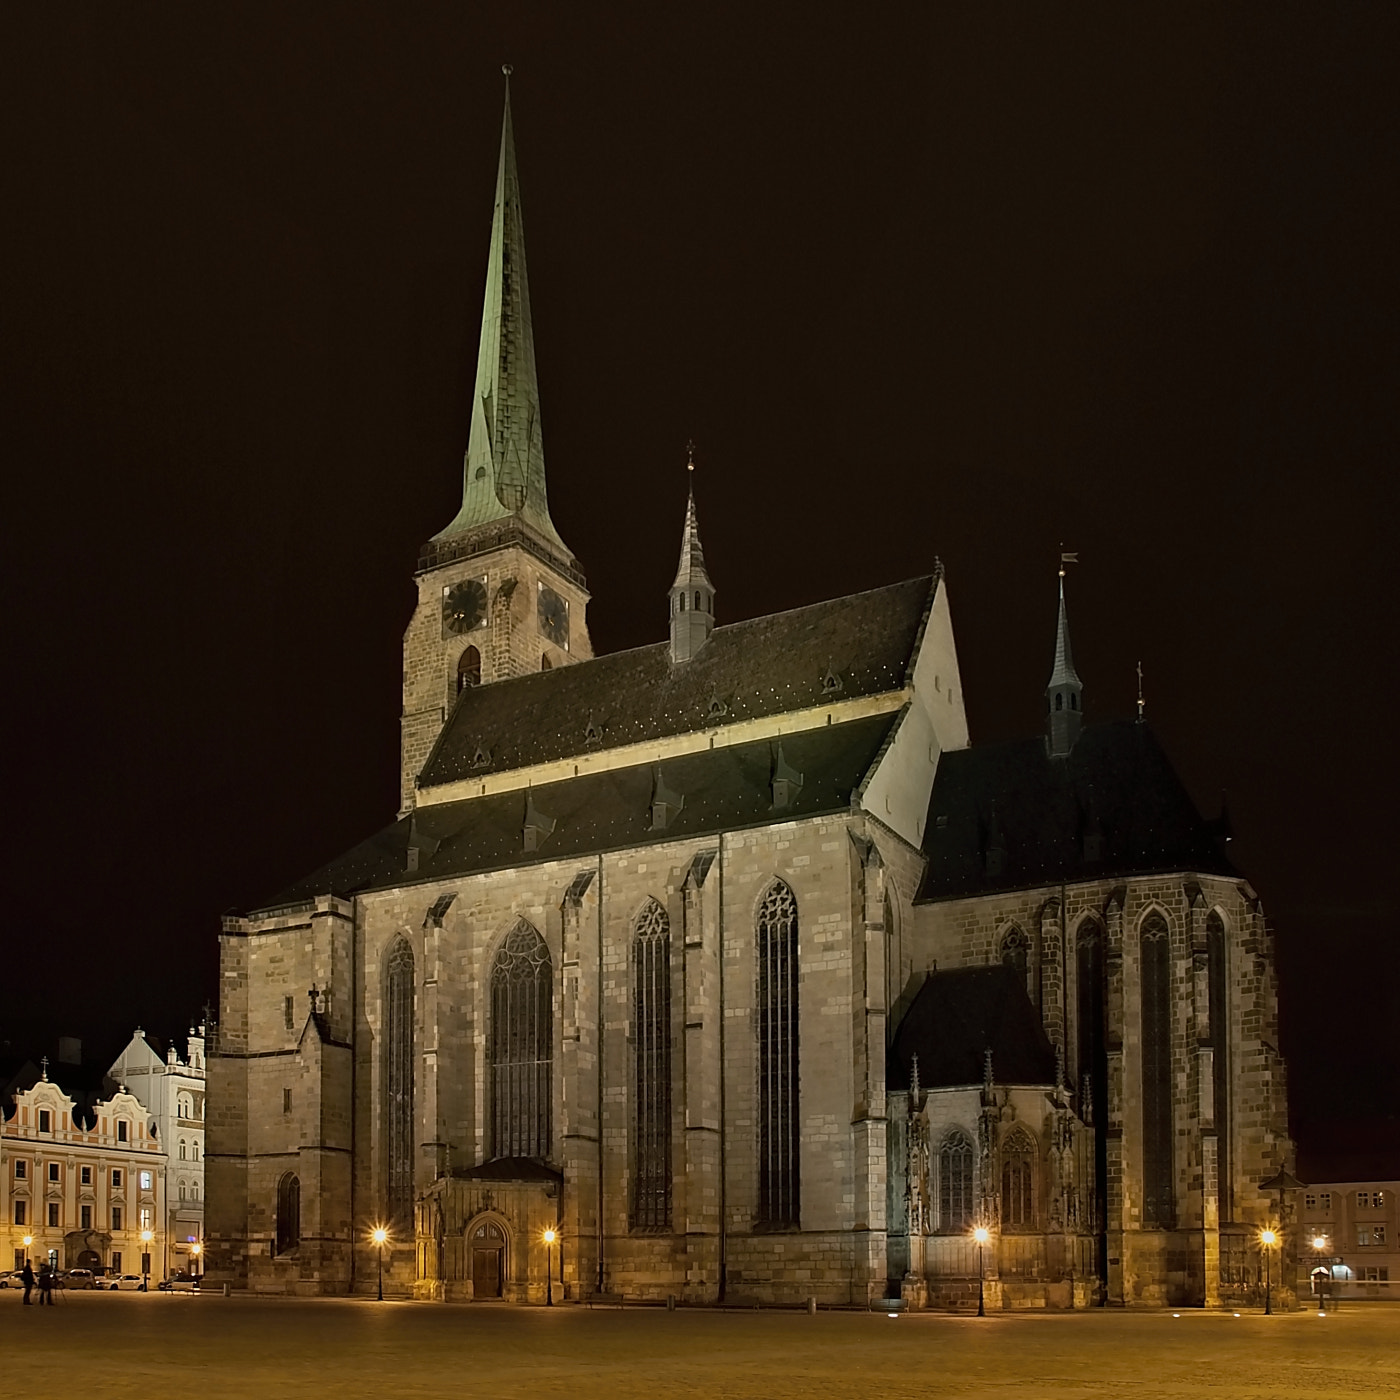 Olympus E-30 sample photo. Cathedral of st. bartholomew (plzeň) photography